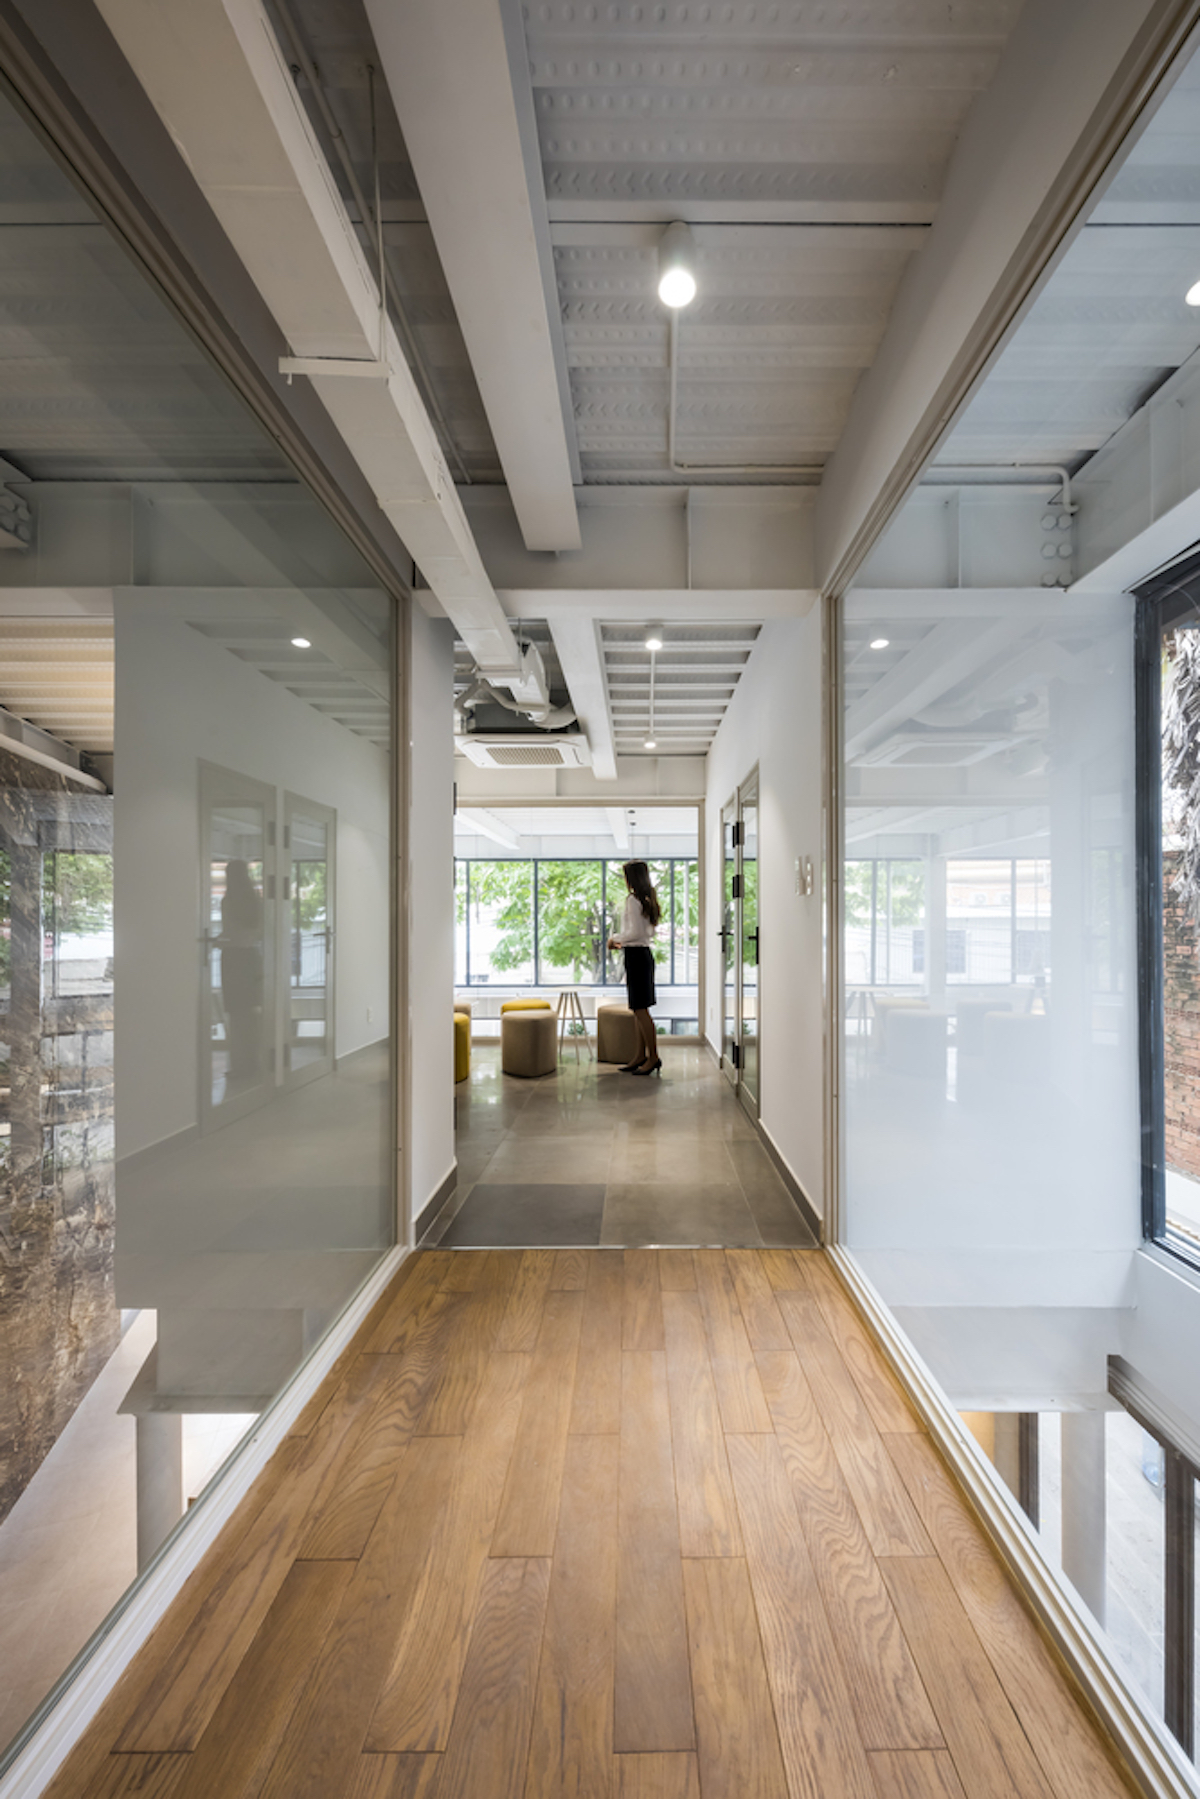 Văn phòng Flexi-Office với những không gian miền nhiệt đới | T3 ARCHITECTS